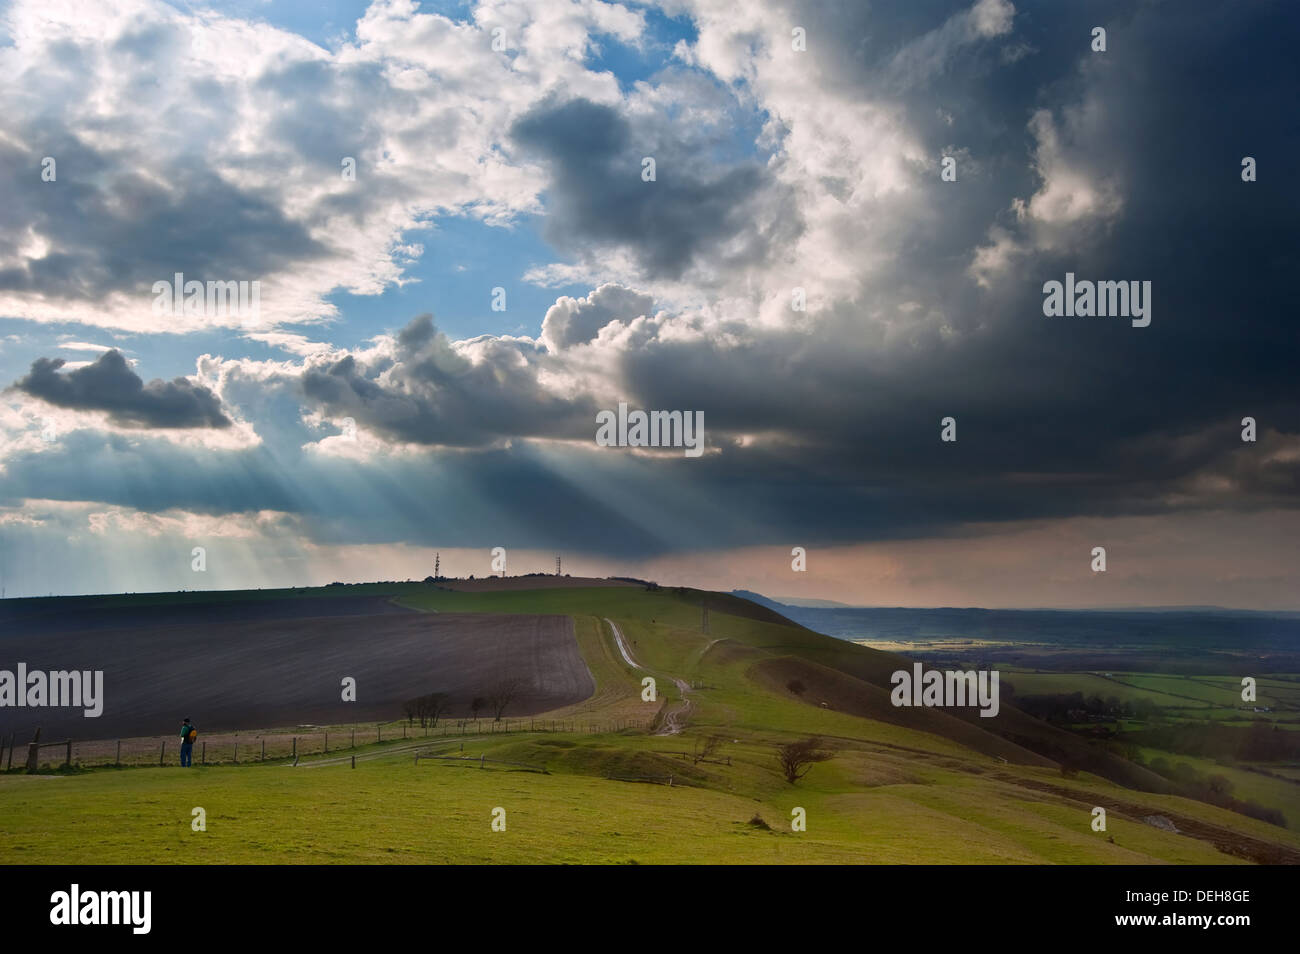 Splendido paesaggio di campagna attraverso colline ondulate con belle formazioni di nubi Foto Stock